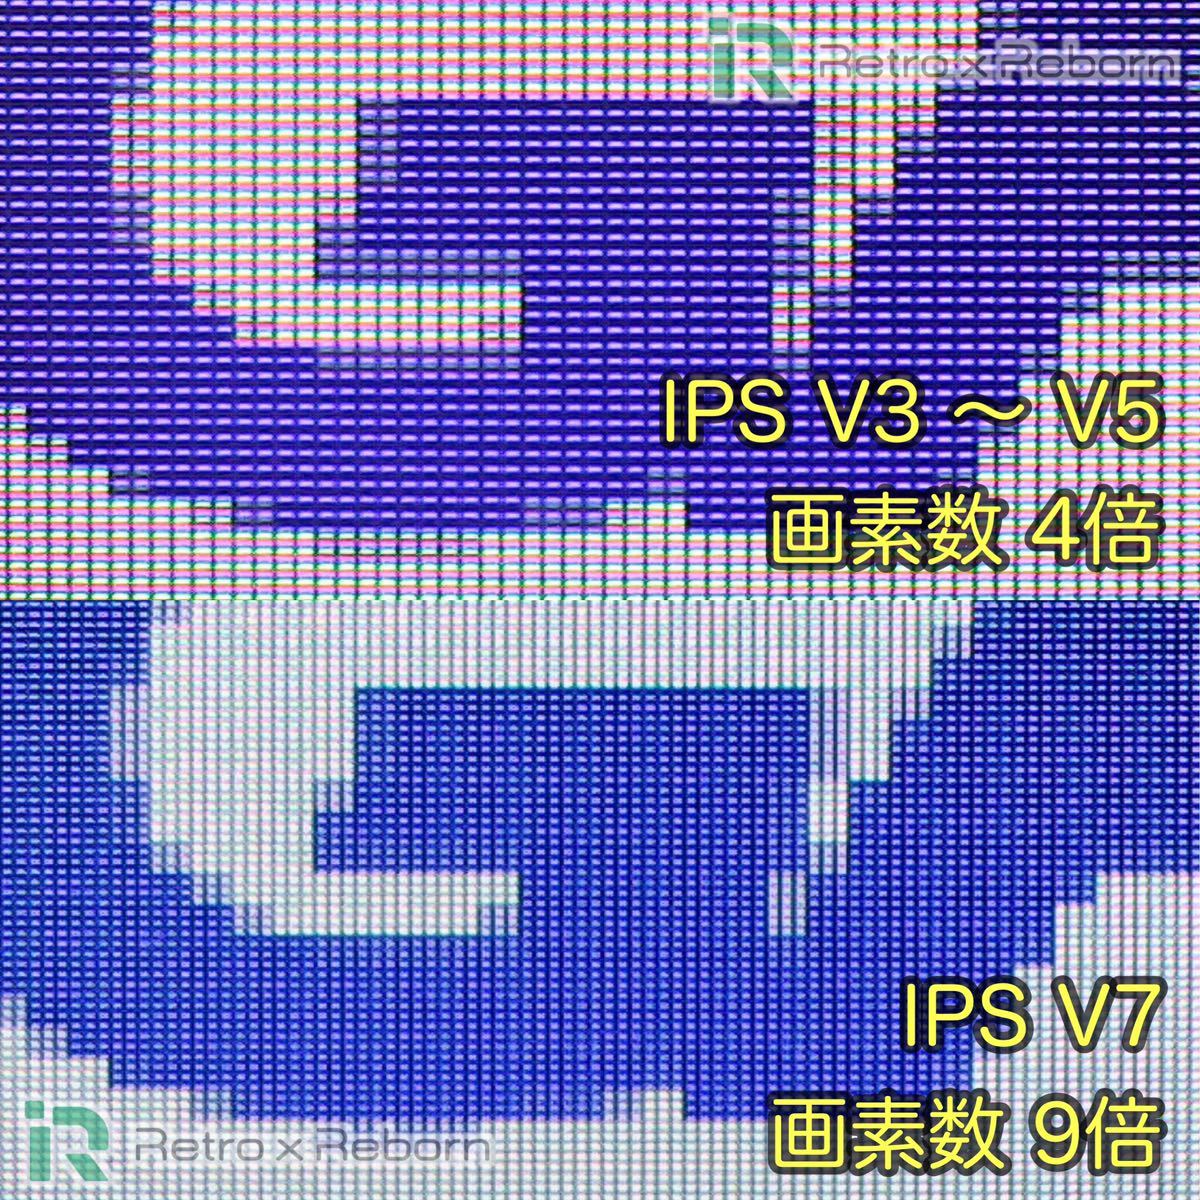 ゲームボーイアドバンス SP 本体 IPS V7 バックライト液晶搭載 029